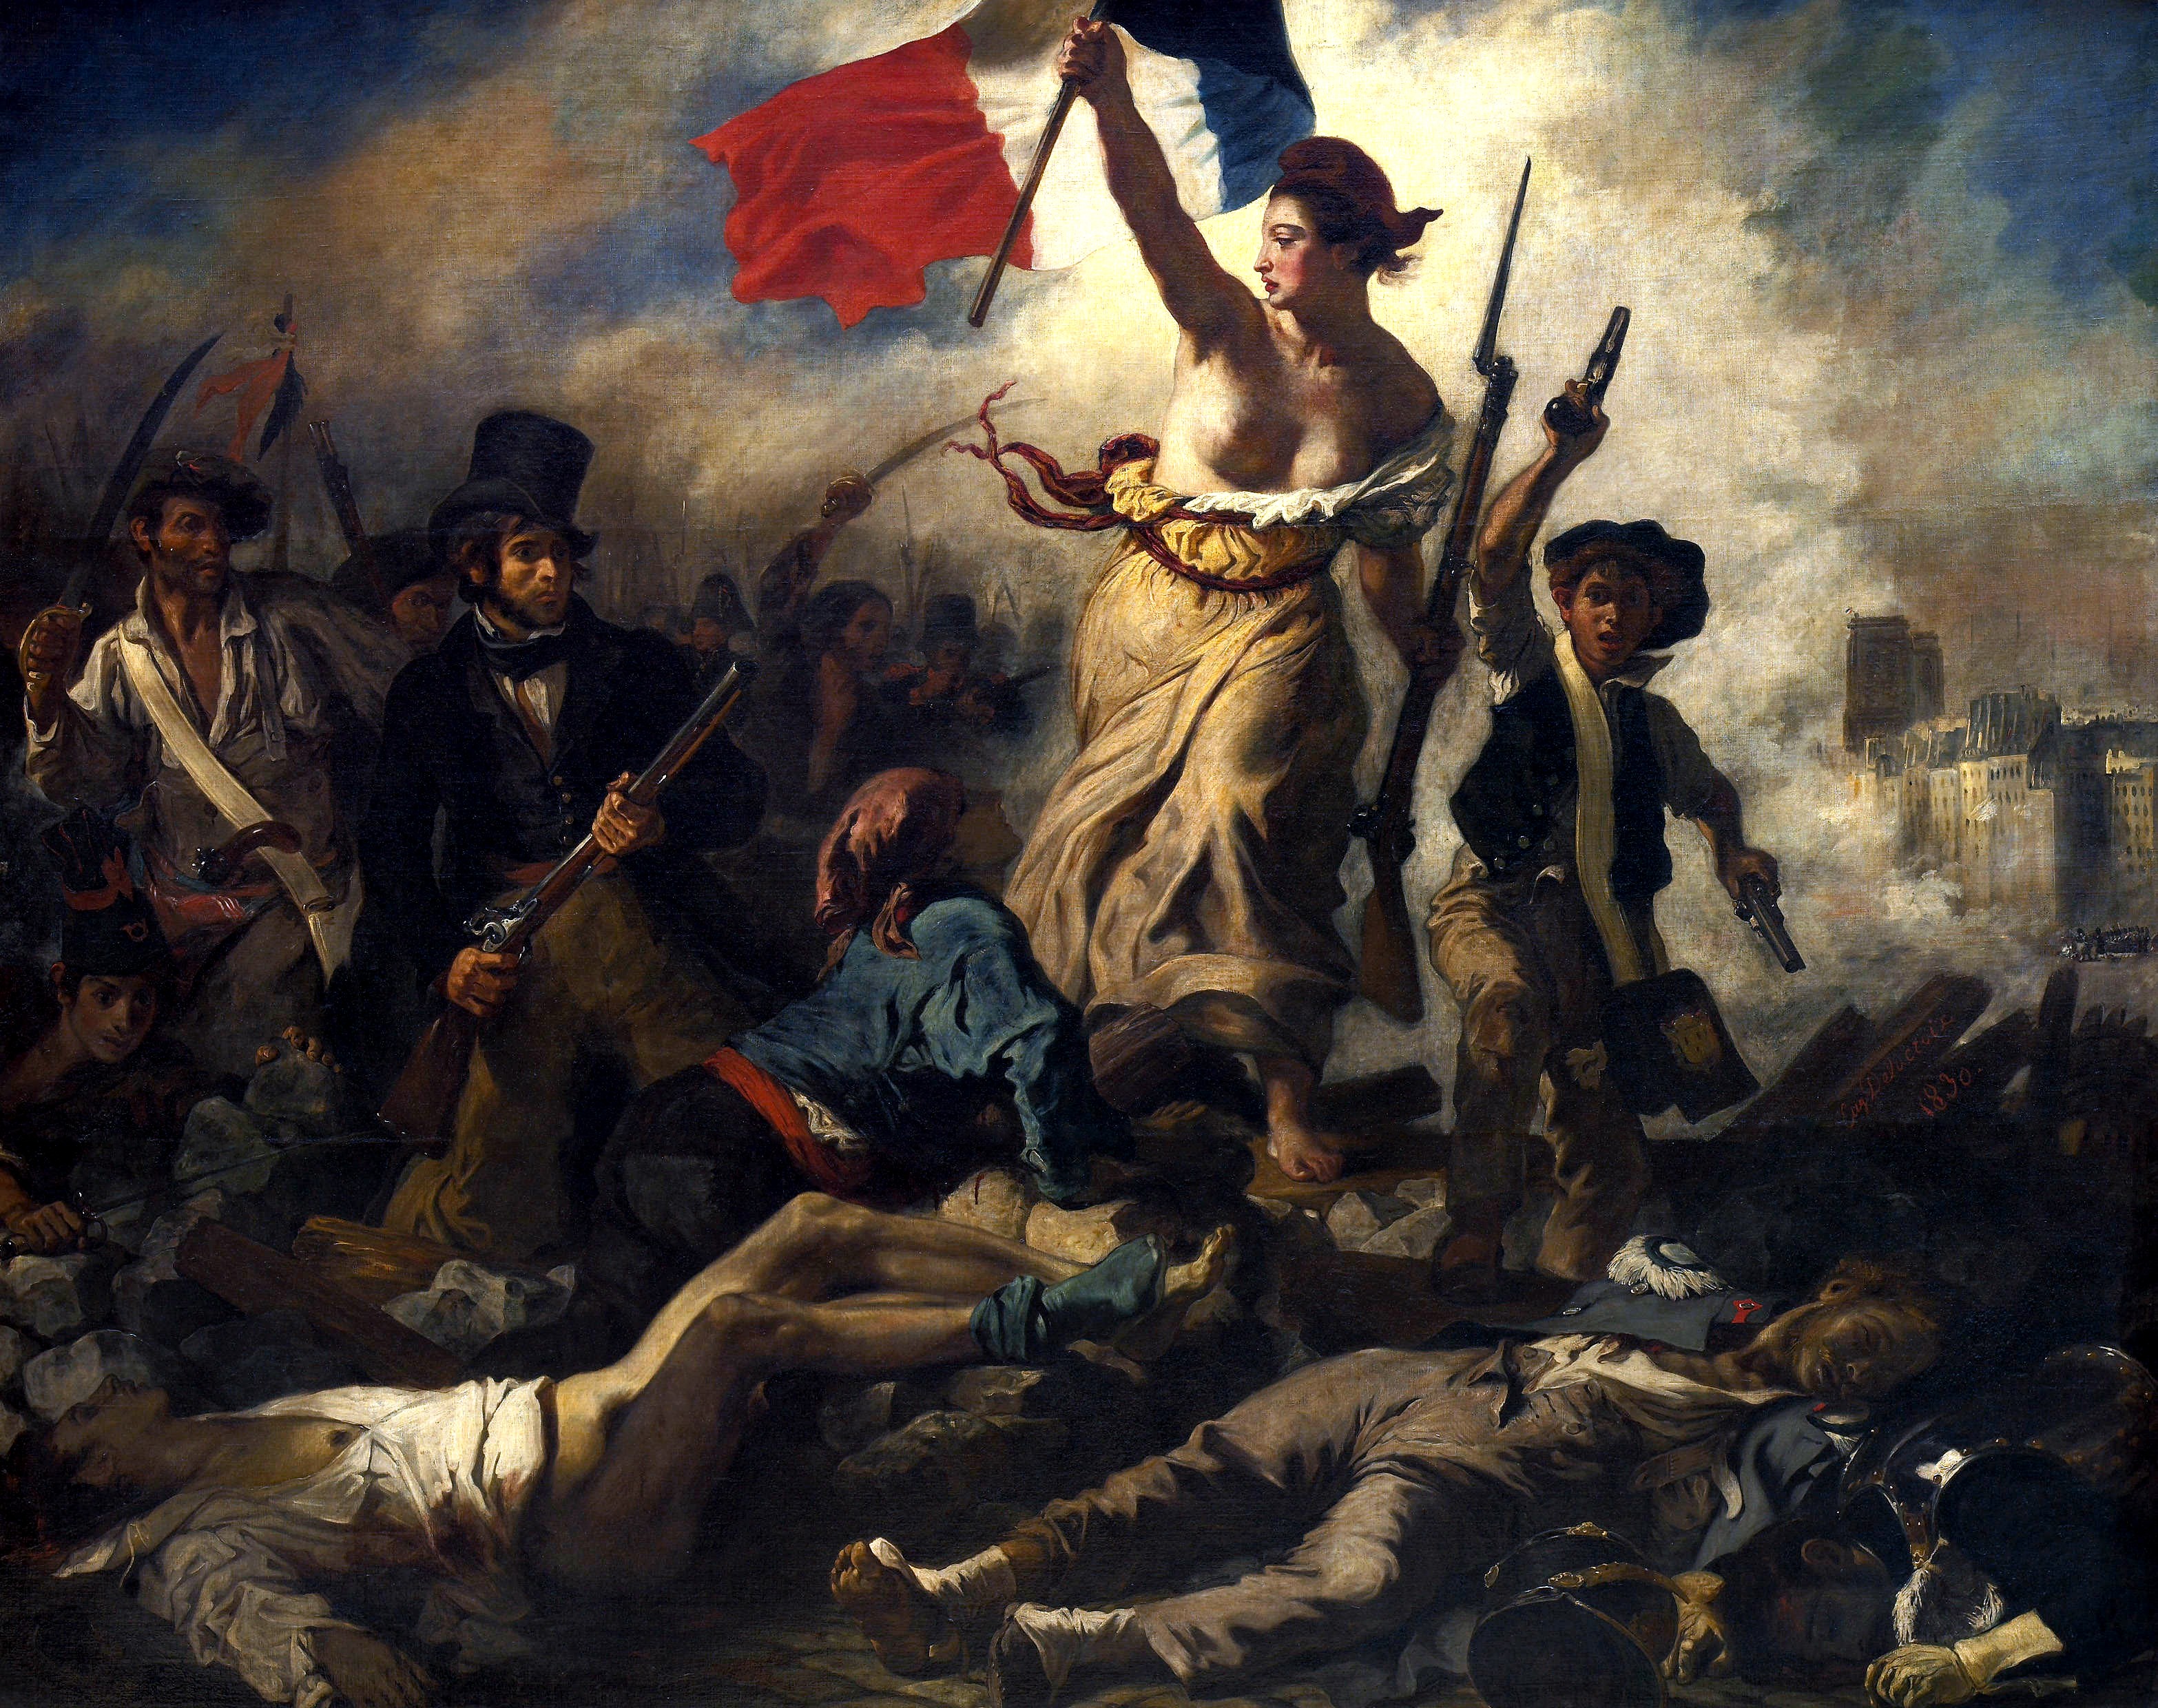 Eugène Delacroix, Liberty Leading the People, 28 July 1830 (1830, Oil on canvas, Louvre Museum, Paris)